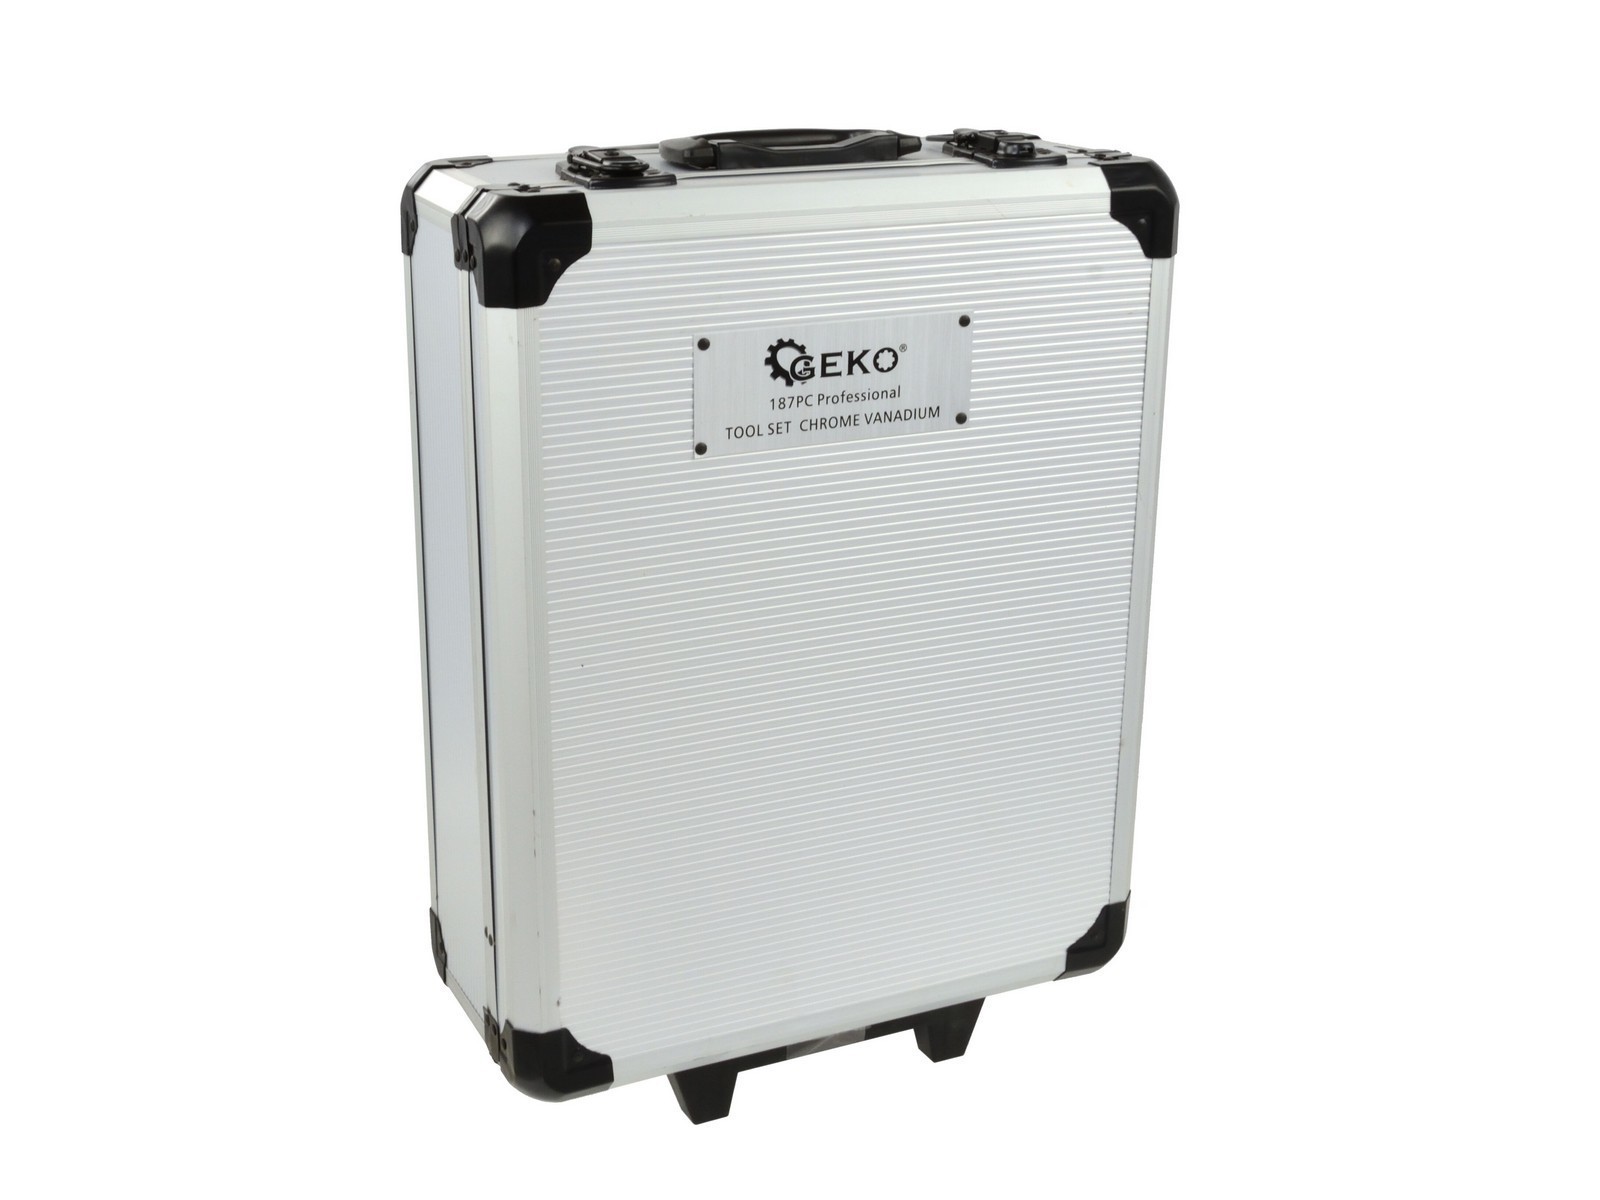 Univerzální hliníkový kufr GEKO nářadí G10849 + Dárek, servis bez starostí v hodnotě 300Kč